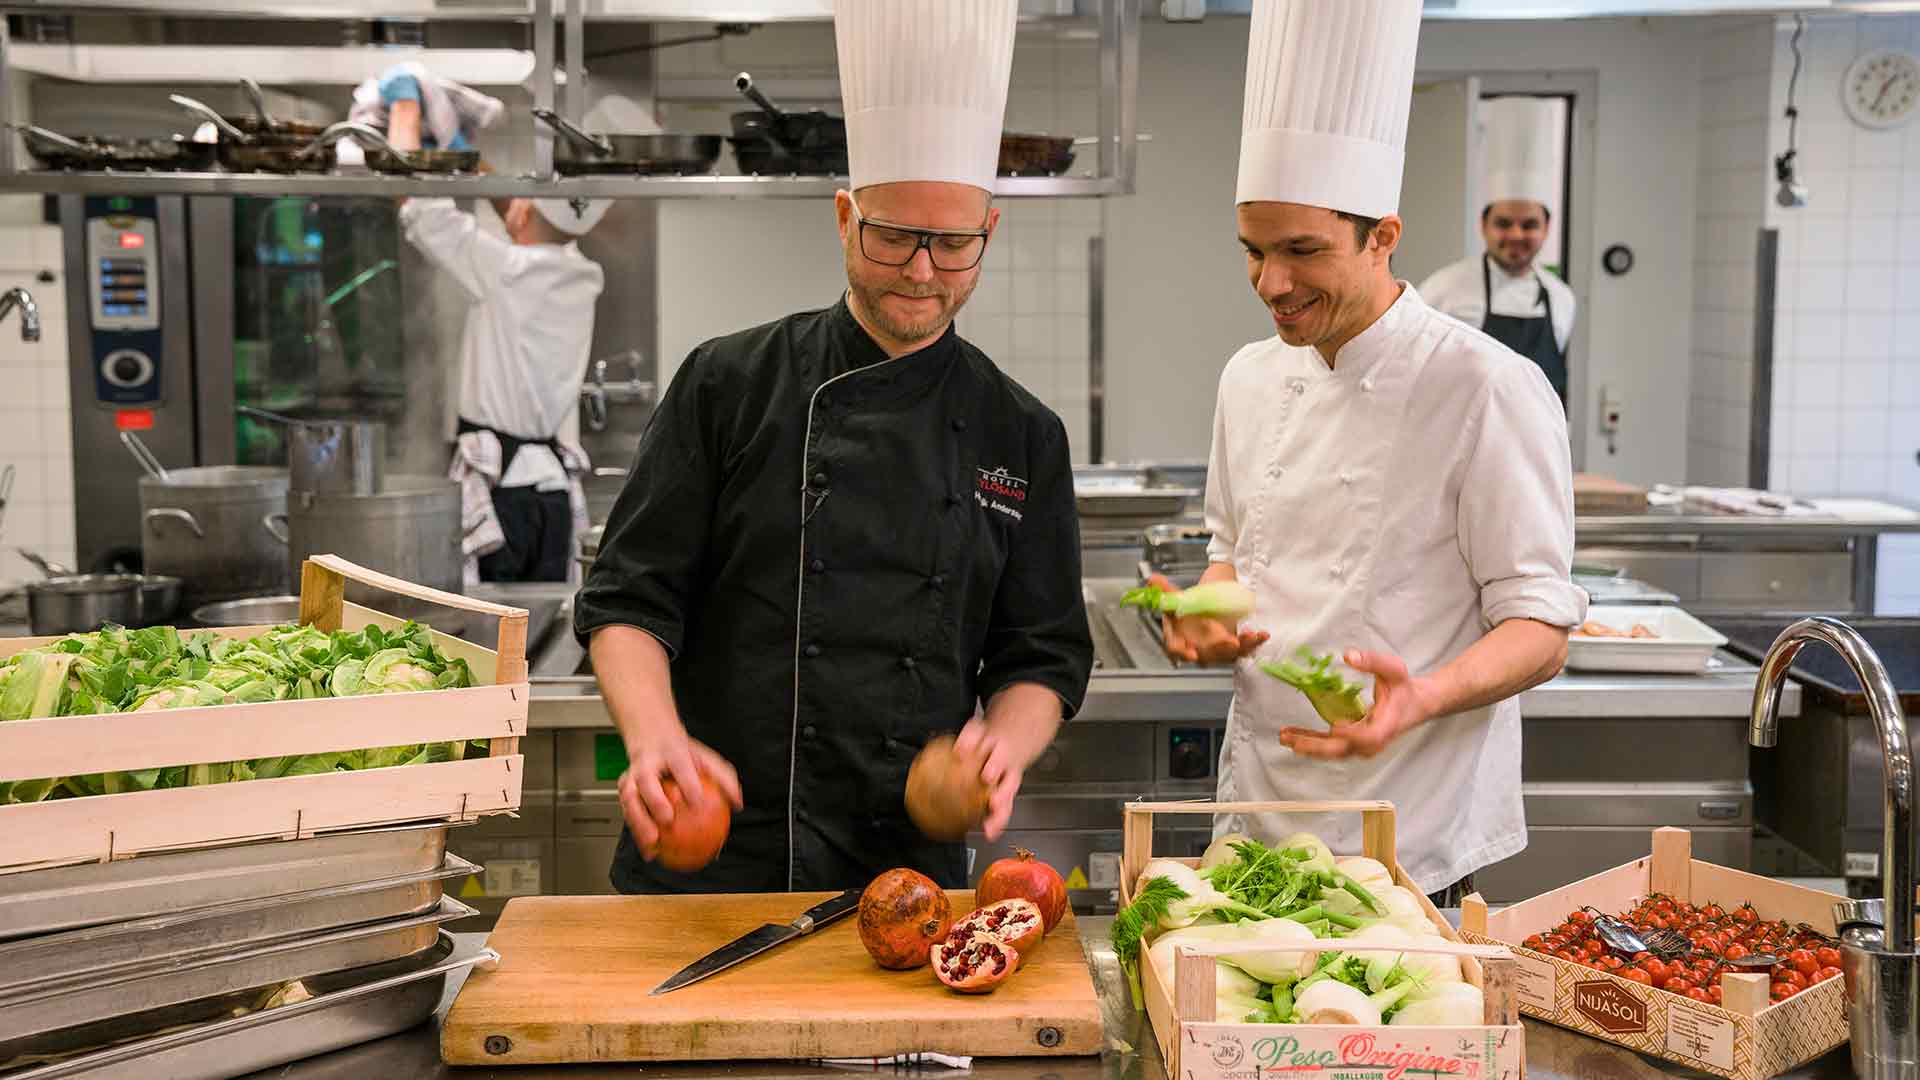  Chefs at Restaurant Tylöhus in Tylösand in Halmstad